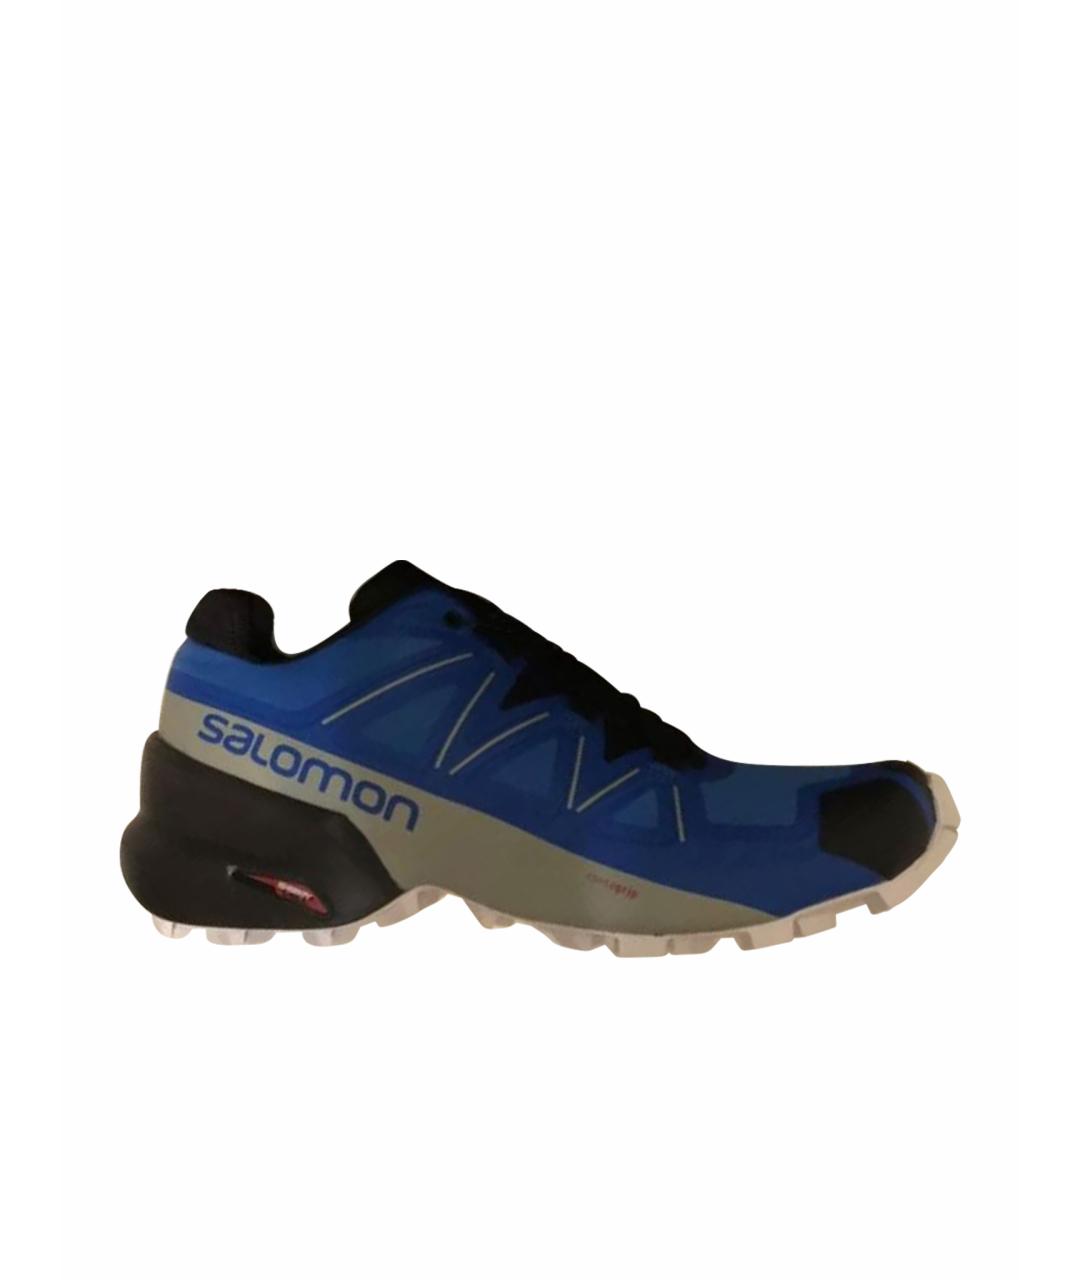 SALOMON Синие синтетические низкие кроссовки / кеды, фото 1